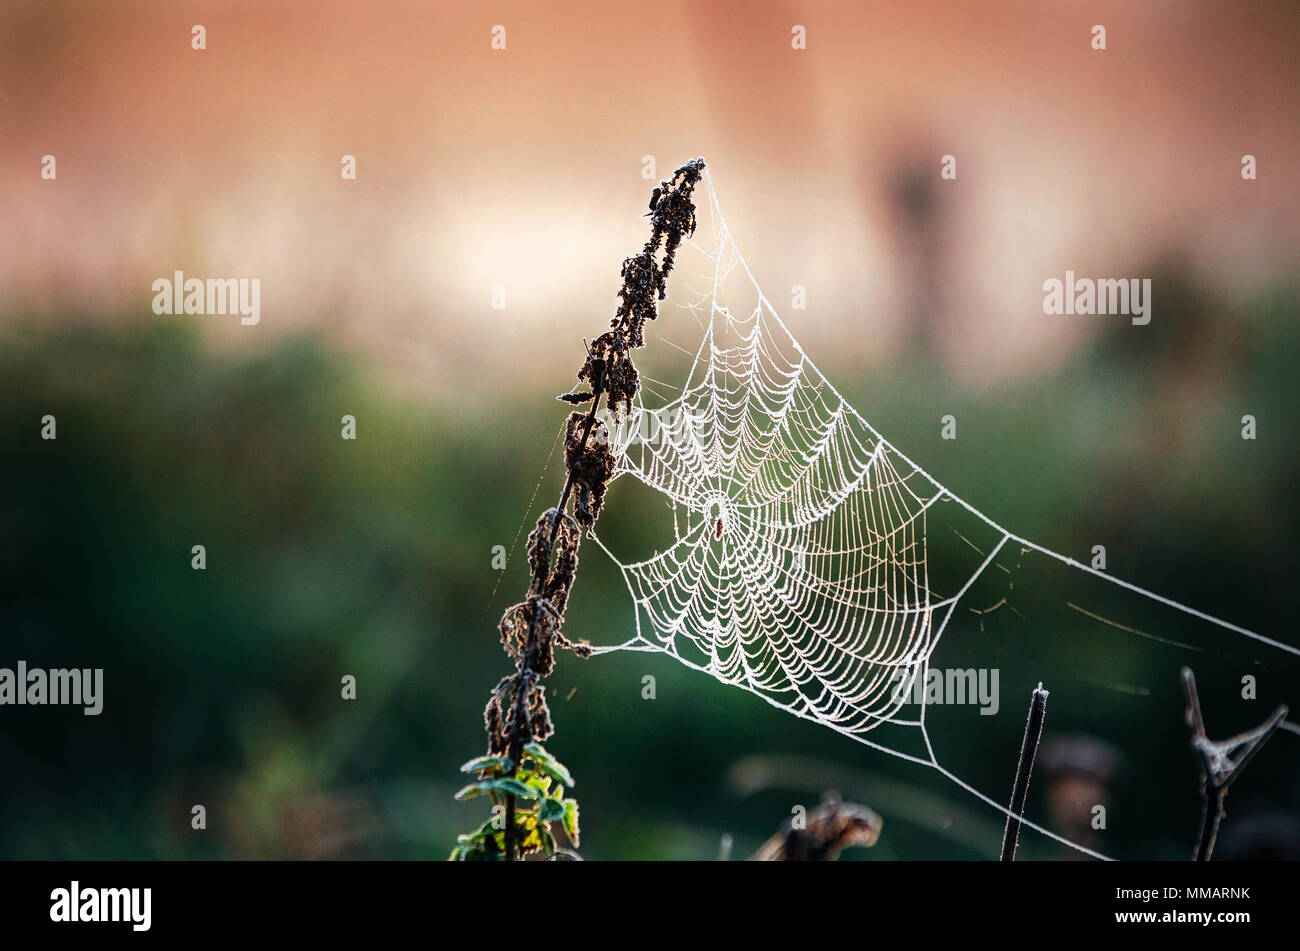 Cobweb Spider web dans le givre au matin. Araignée dans la forêt d'automne. De la glace sur la toile d'araignée. Banque D'Images